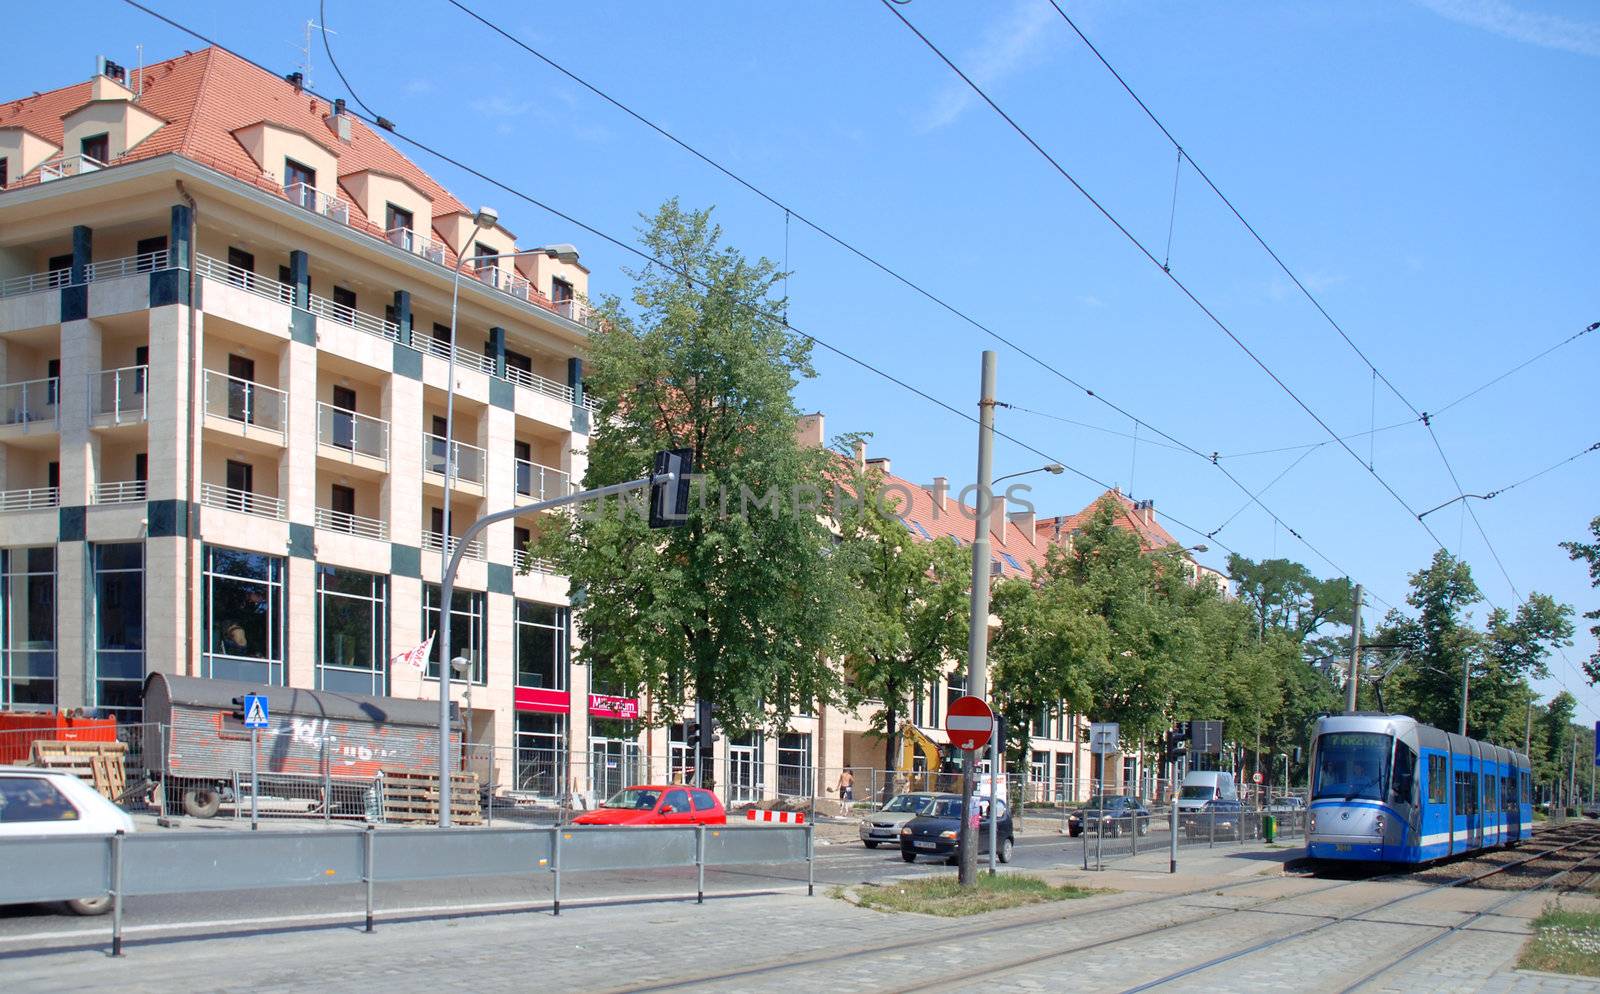 Apartments Rondo Verona, Square Powstancow Slaskich. Wroclaw. Polska by wojciechkozlowski